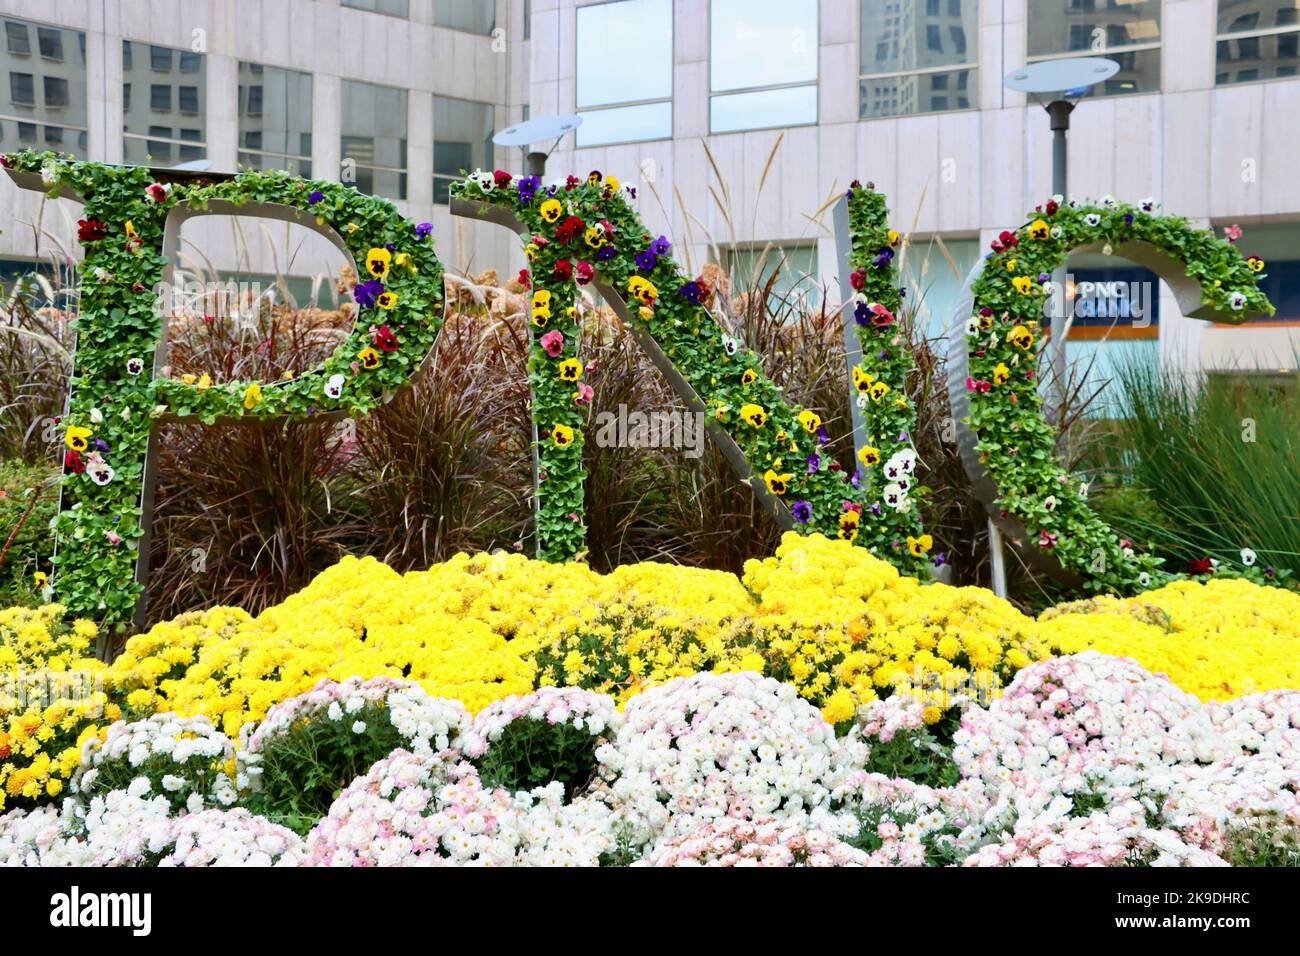 Exposition de fleurs PNC Bank sur Euclid Avenue dans le centre-ville de Cleveland, Ohio Banque D'Images